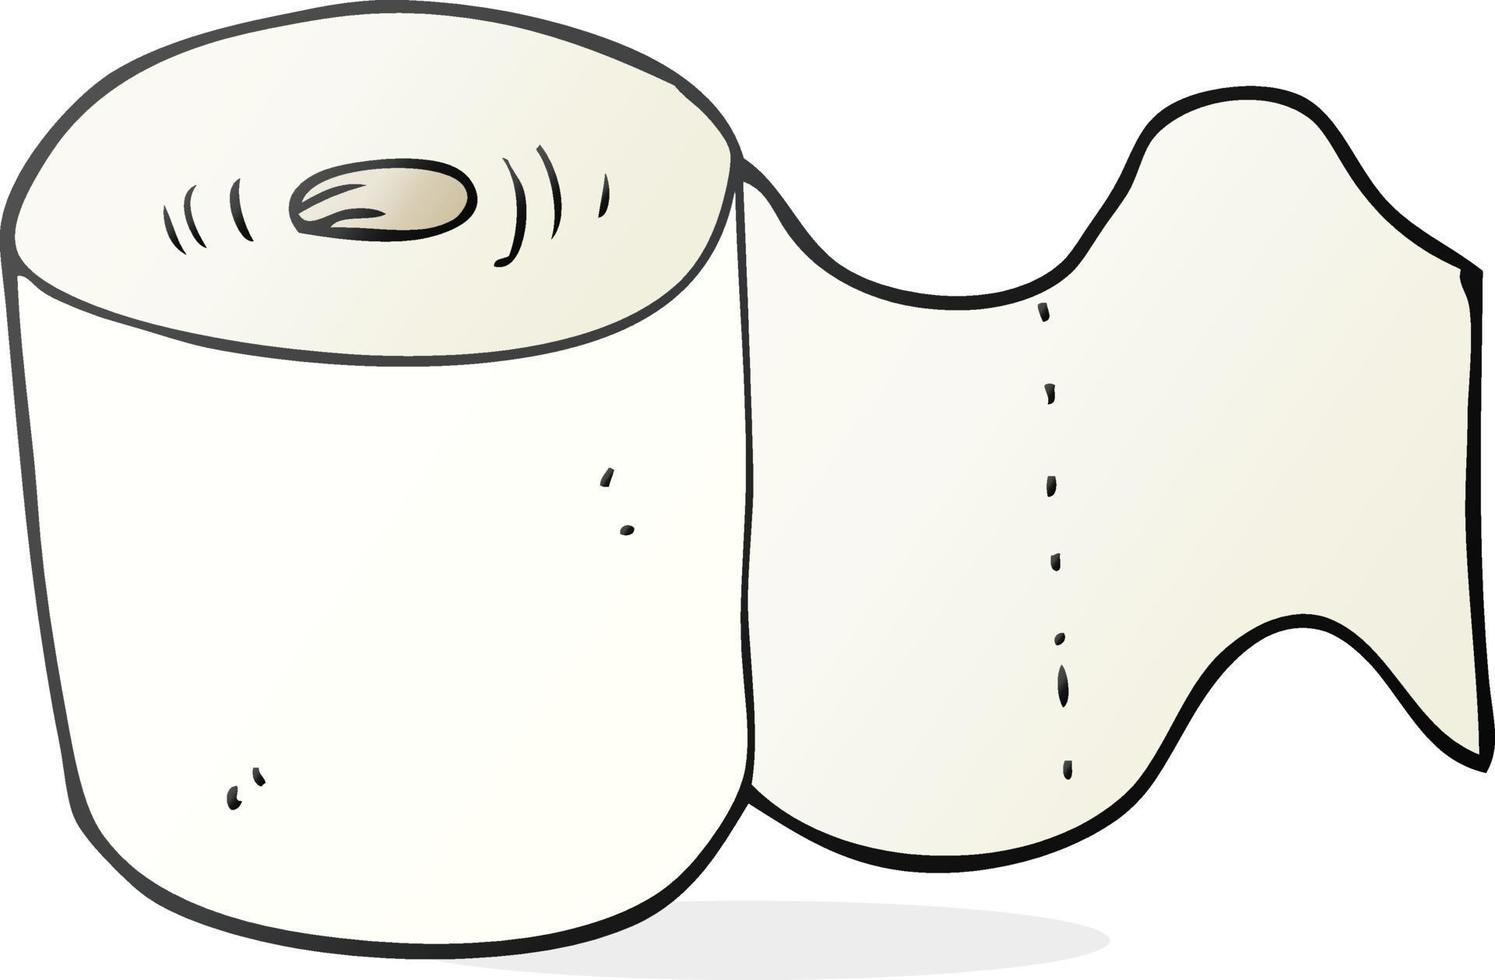 rouleau de papier toilette de dessin animé vecteur